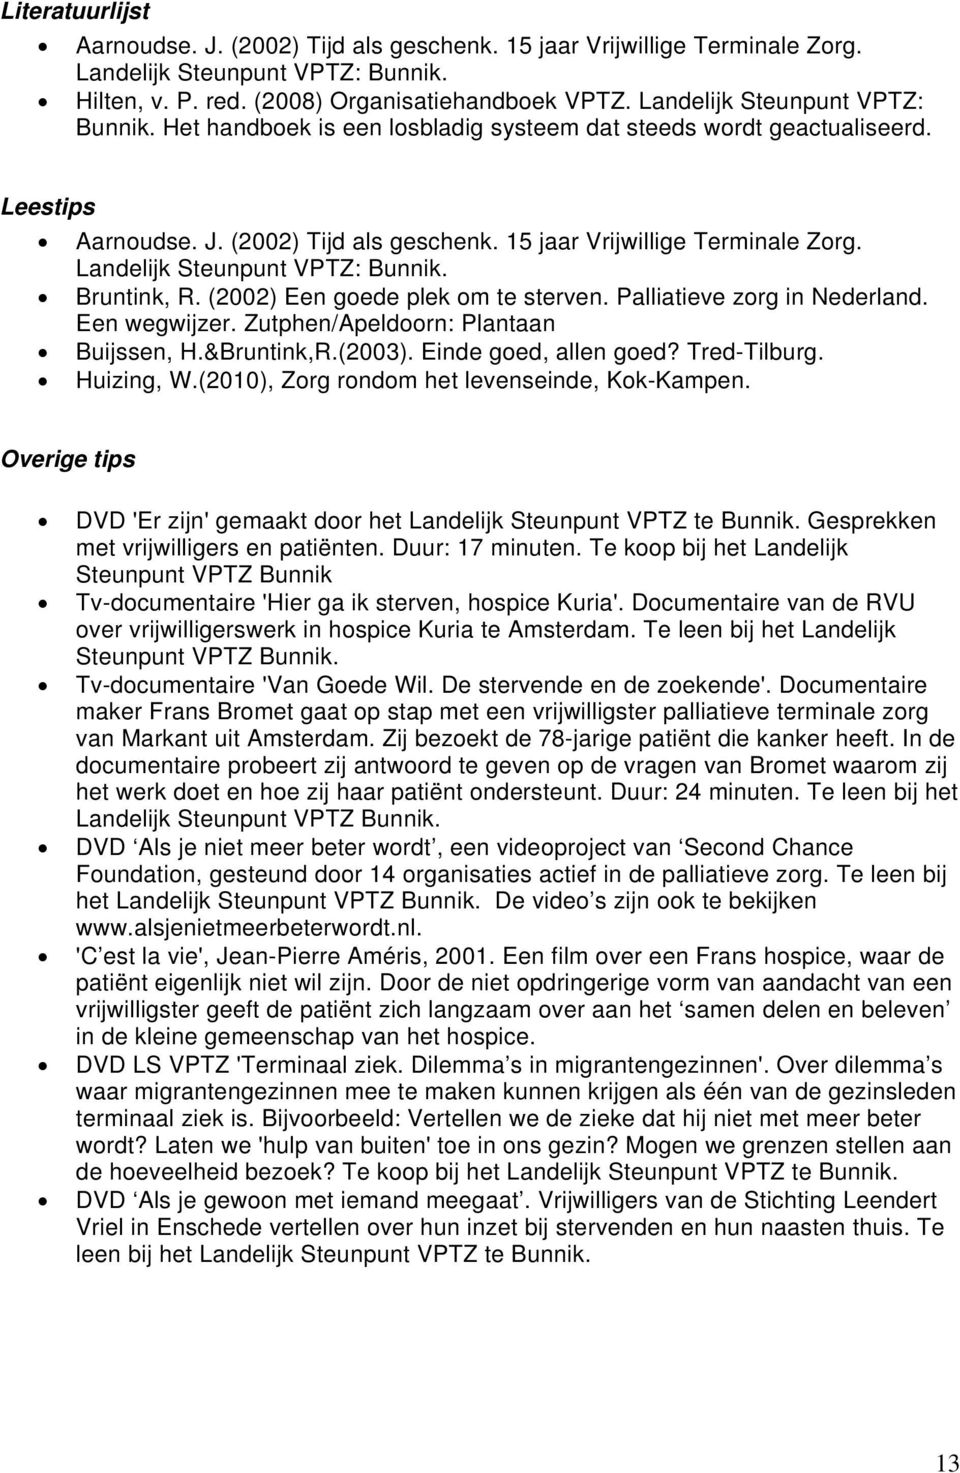 Landelijk Steunpunt VPTZ: Bunnik. Bruntink, R. (2002) Een goede plek om te sterven. Palliatieve zorg in Nederland. Een wegwijzer. Zutphen/Apeldoorn: Plantaan Buijssen, H.&Bruntink,R.(2003).